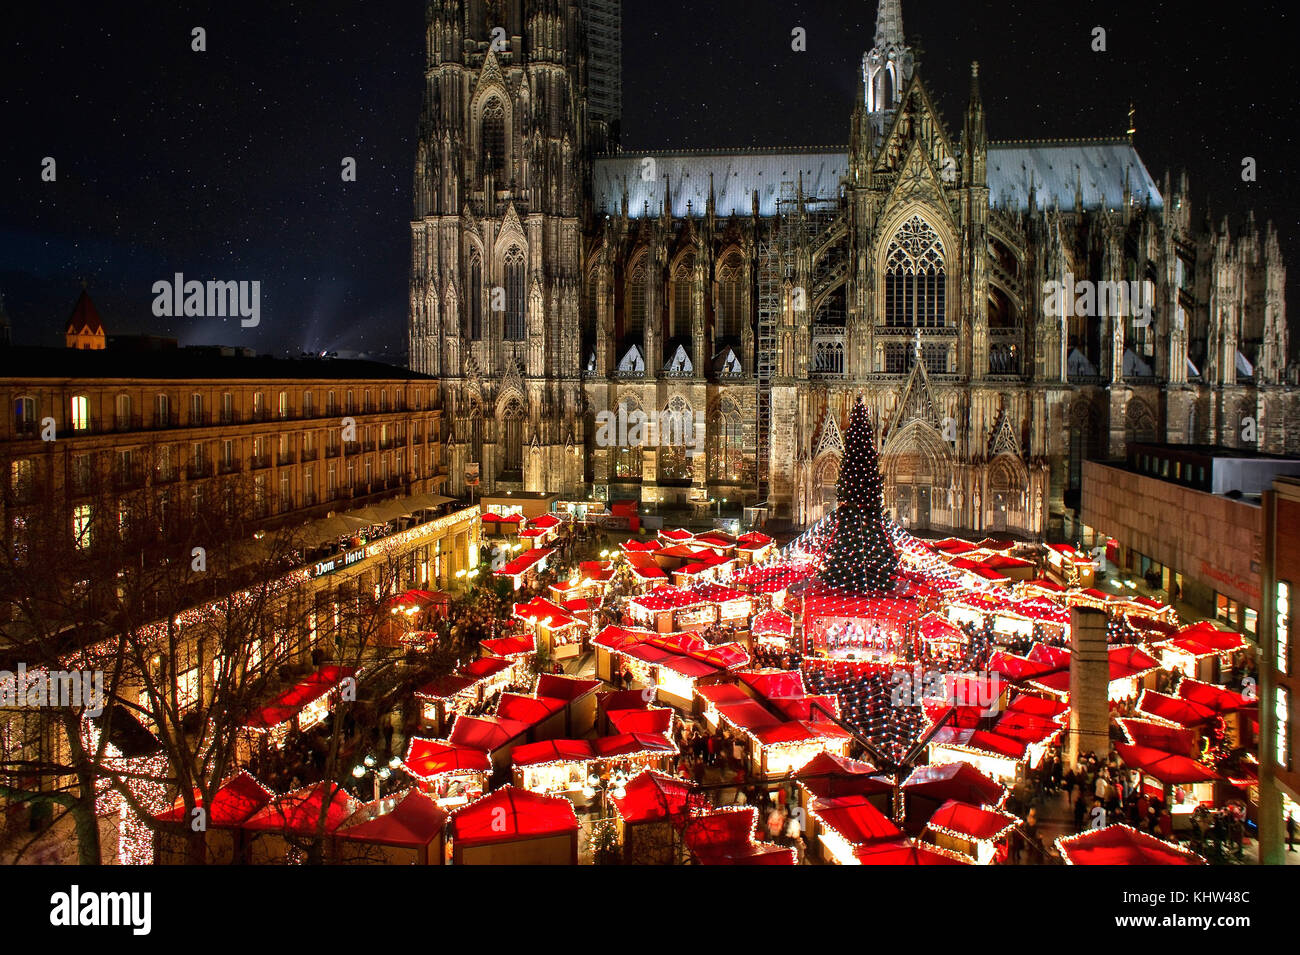 Öffentliche Theater der Kölner Dom weihnachten Markt mit seinen typischen  LED-Beleuchtung und Stern Stockfotografie - Alamy